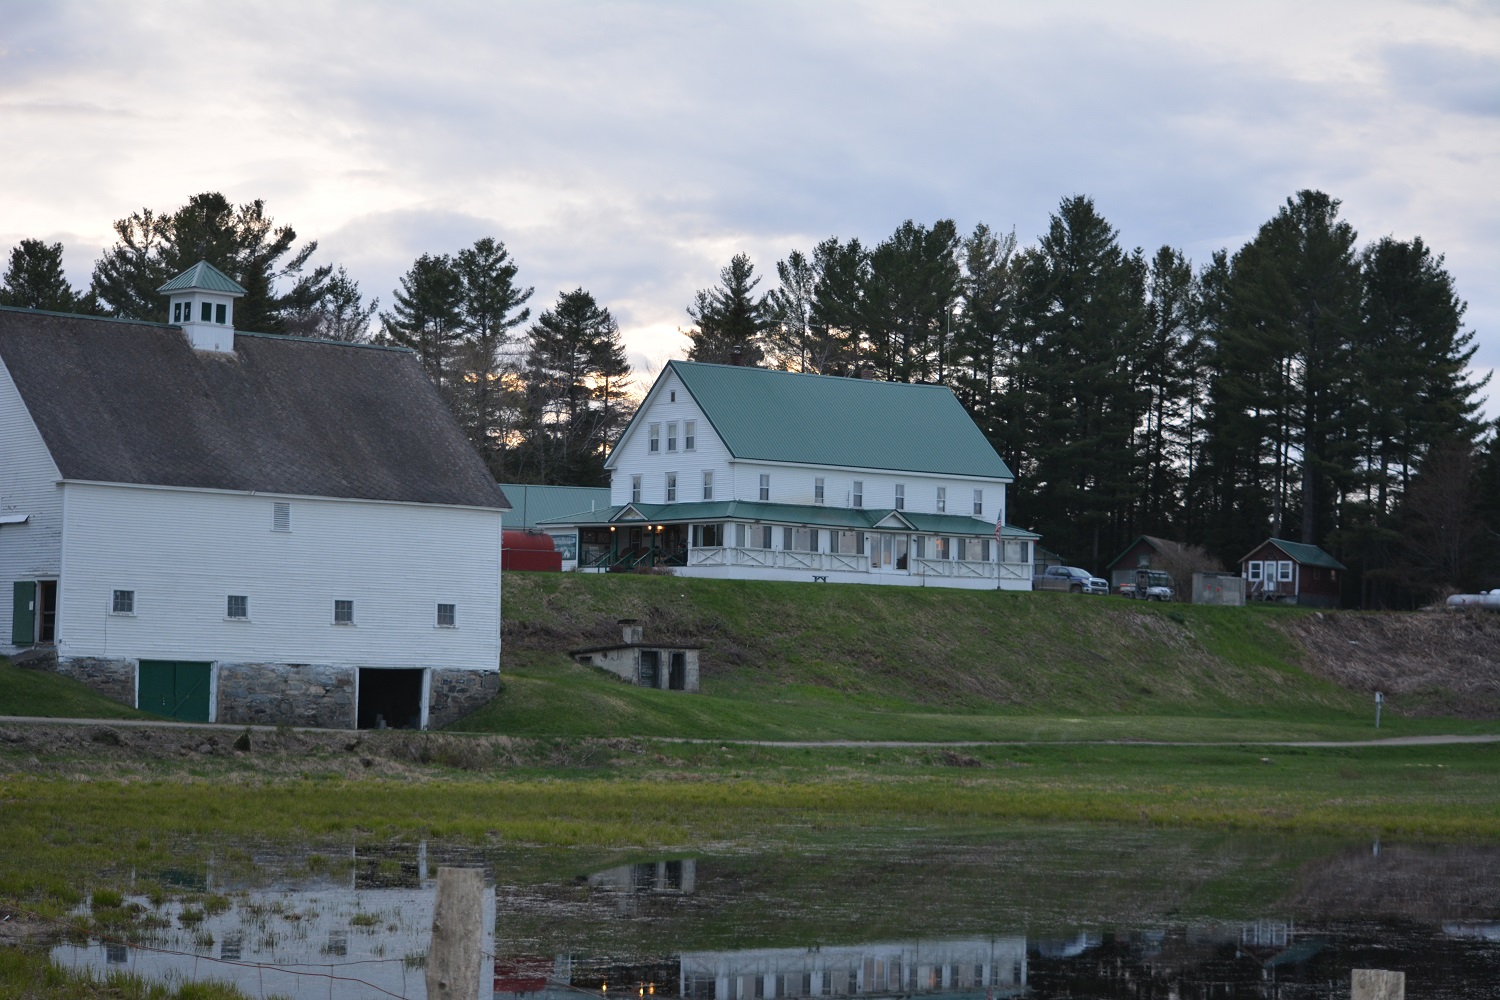 Historic Pittston Farm